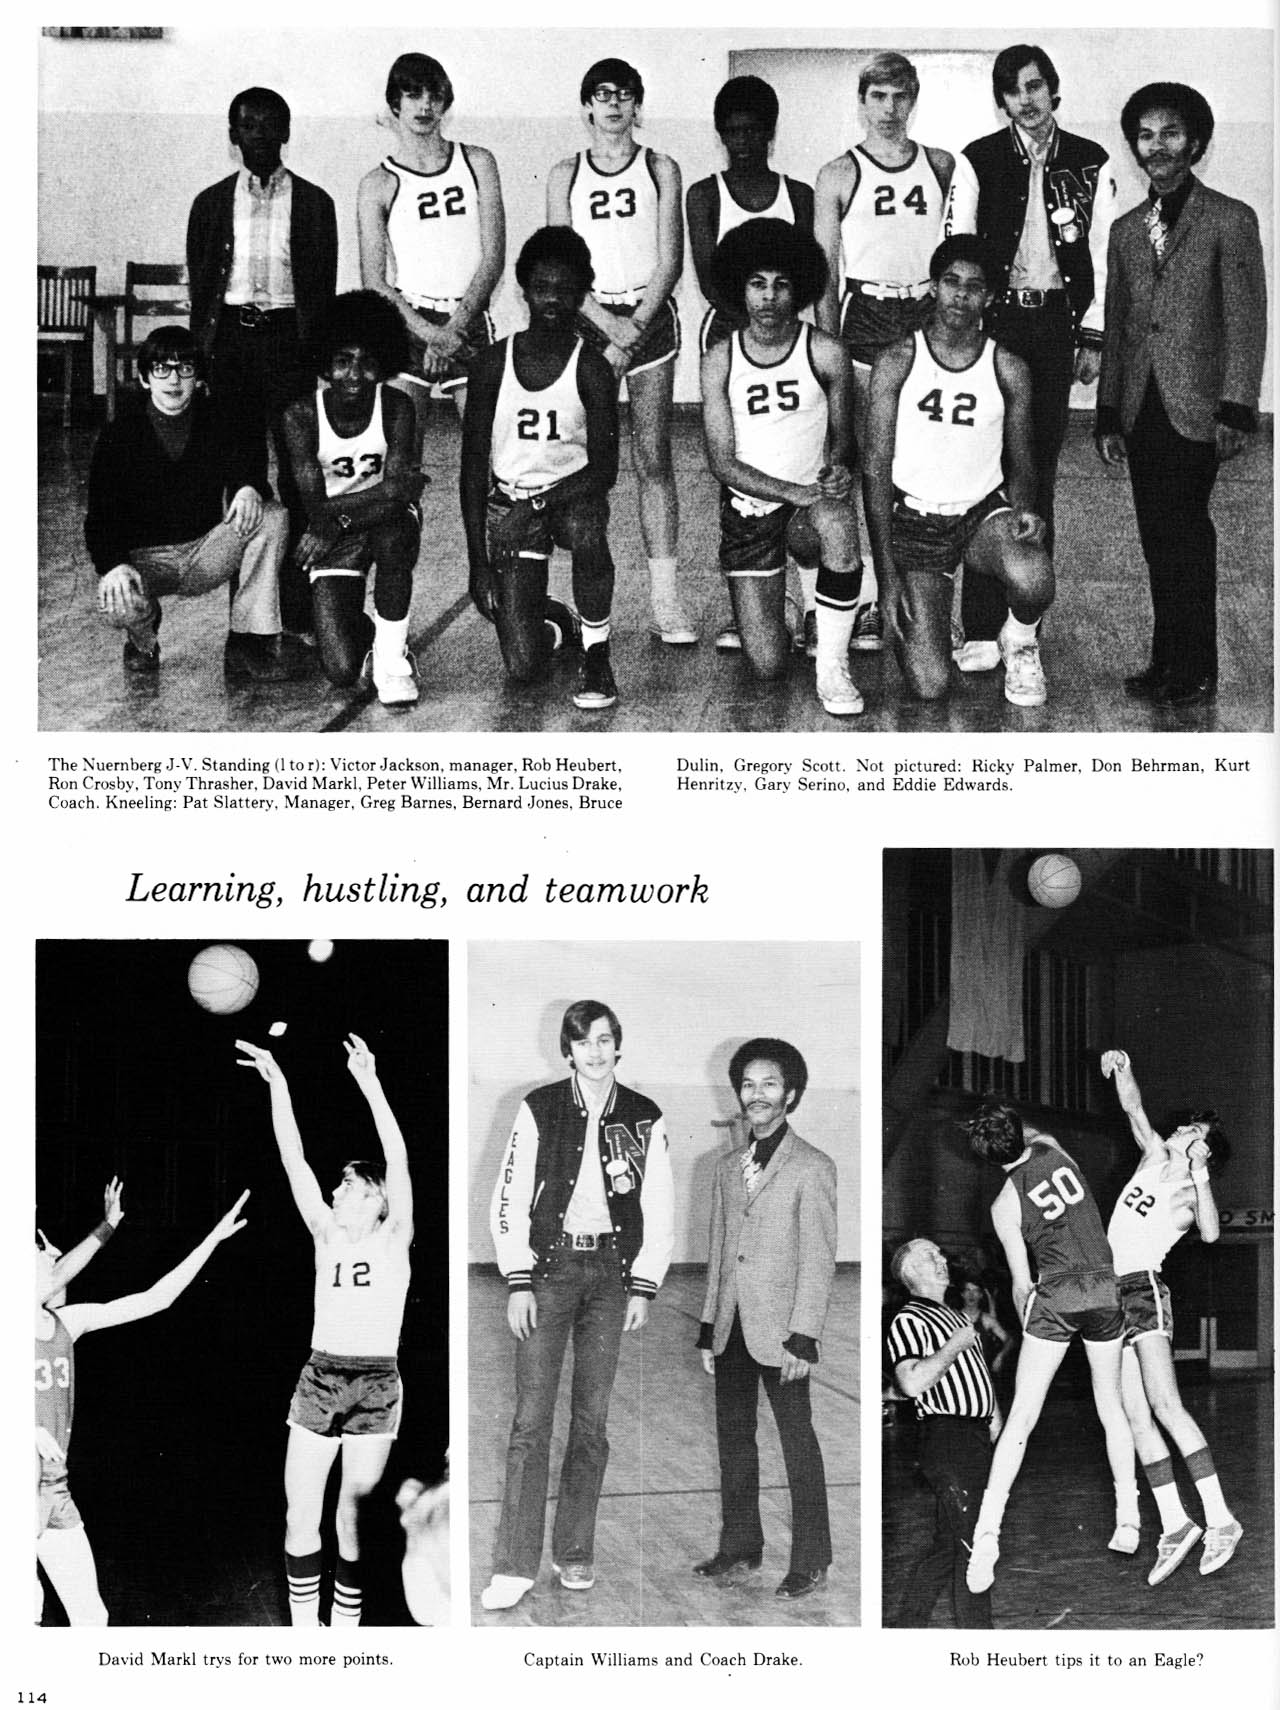 116 Page 114 Basketball